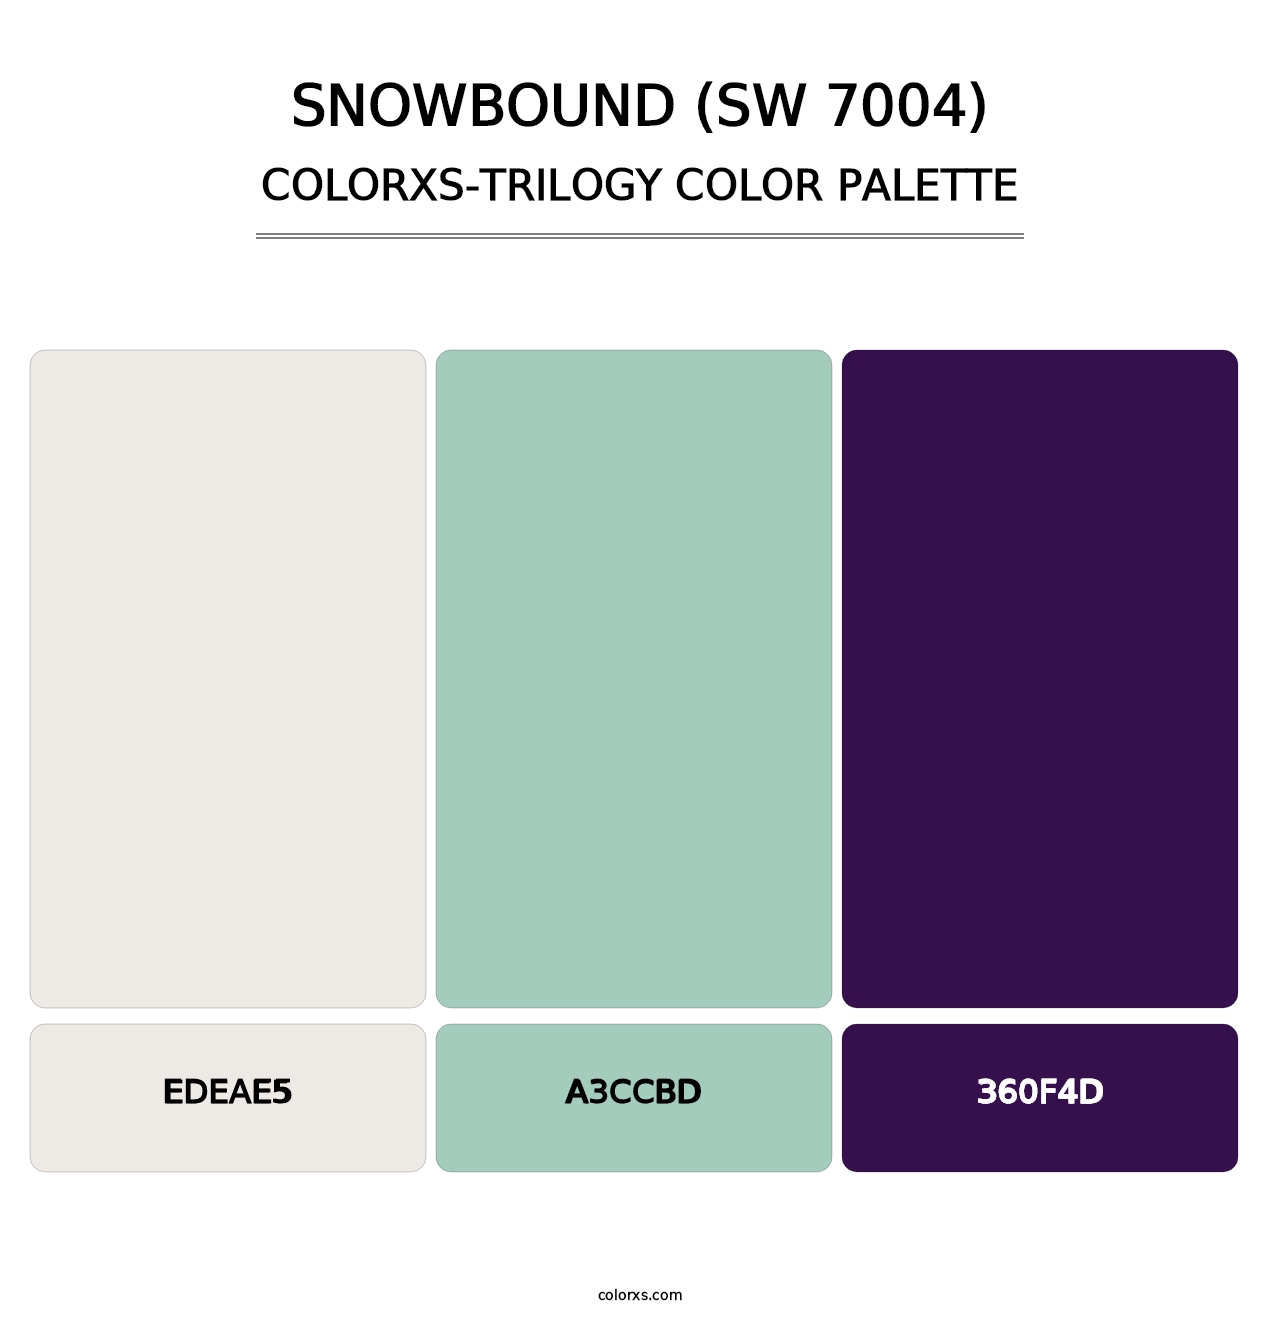 Snowbound (SW 7004) - Colorxs Trilogy Palette